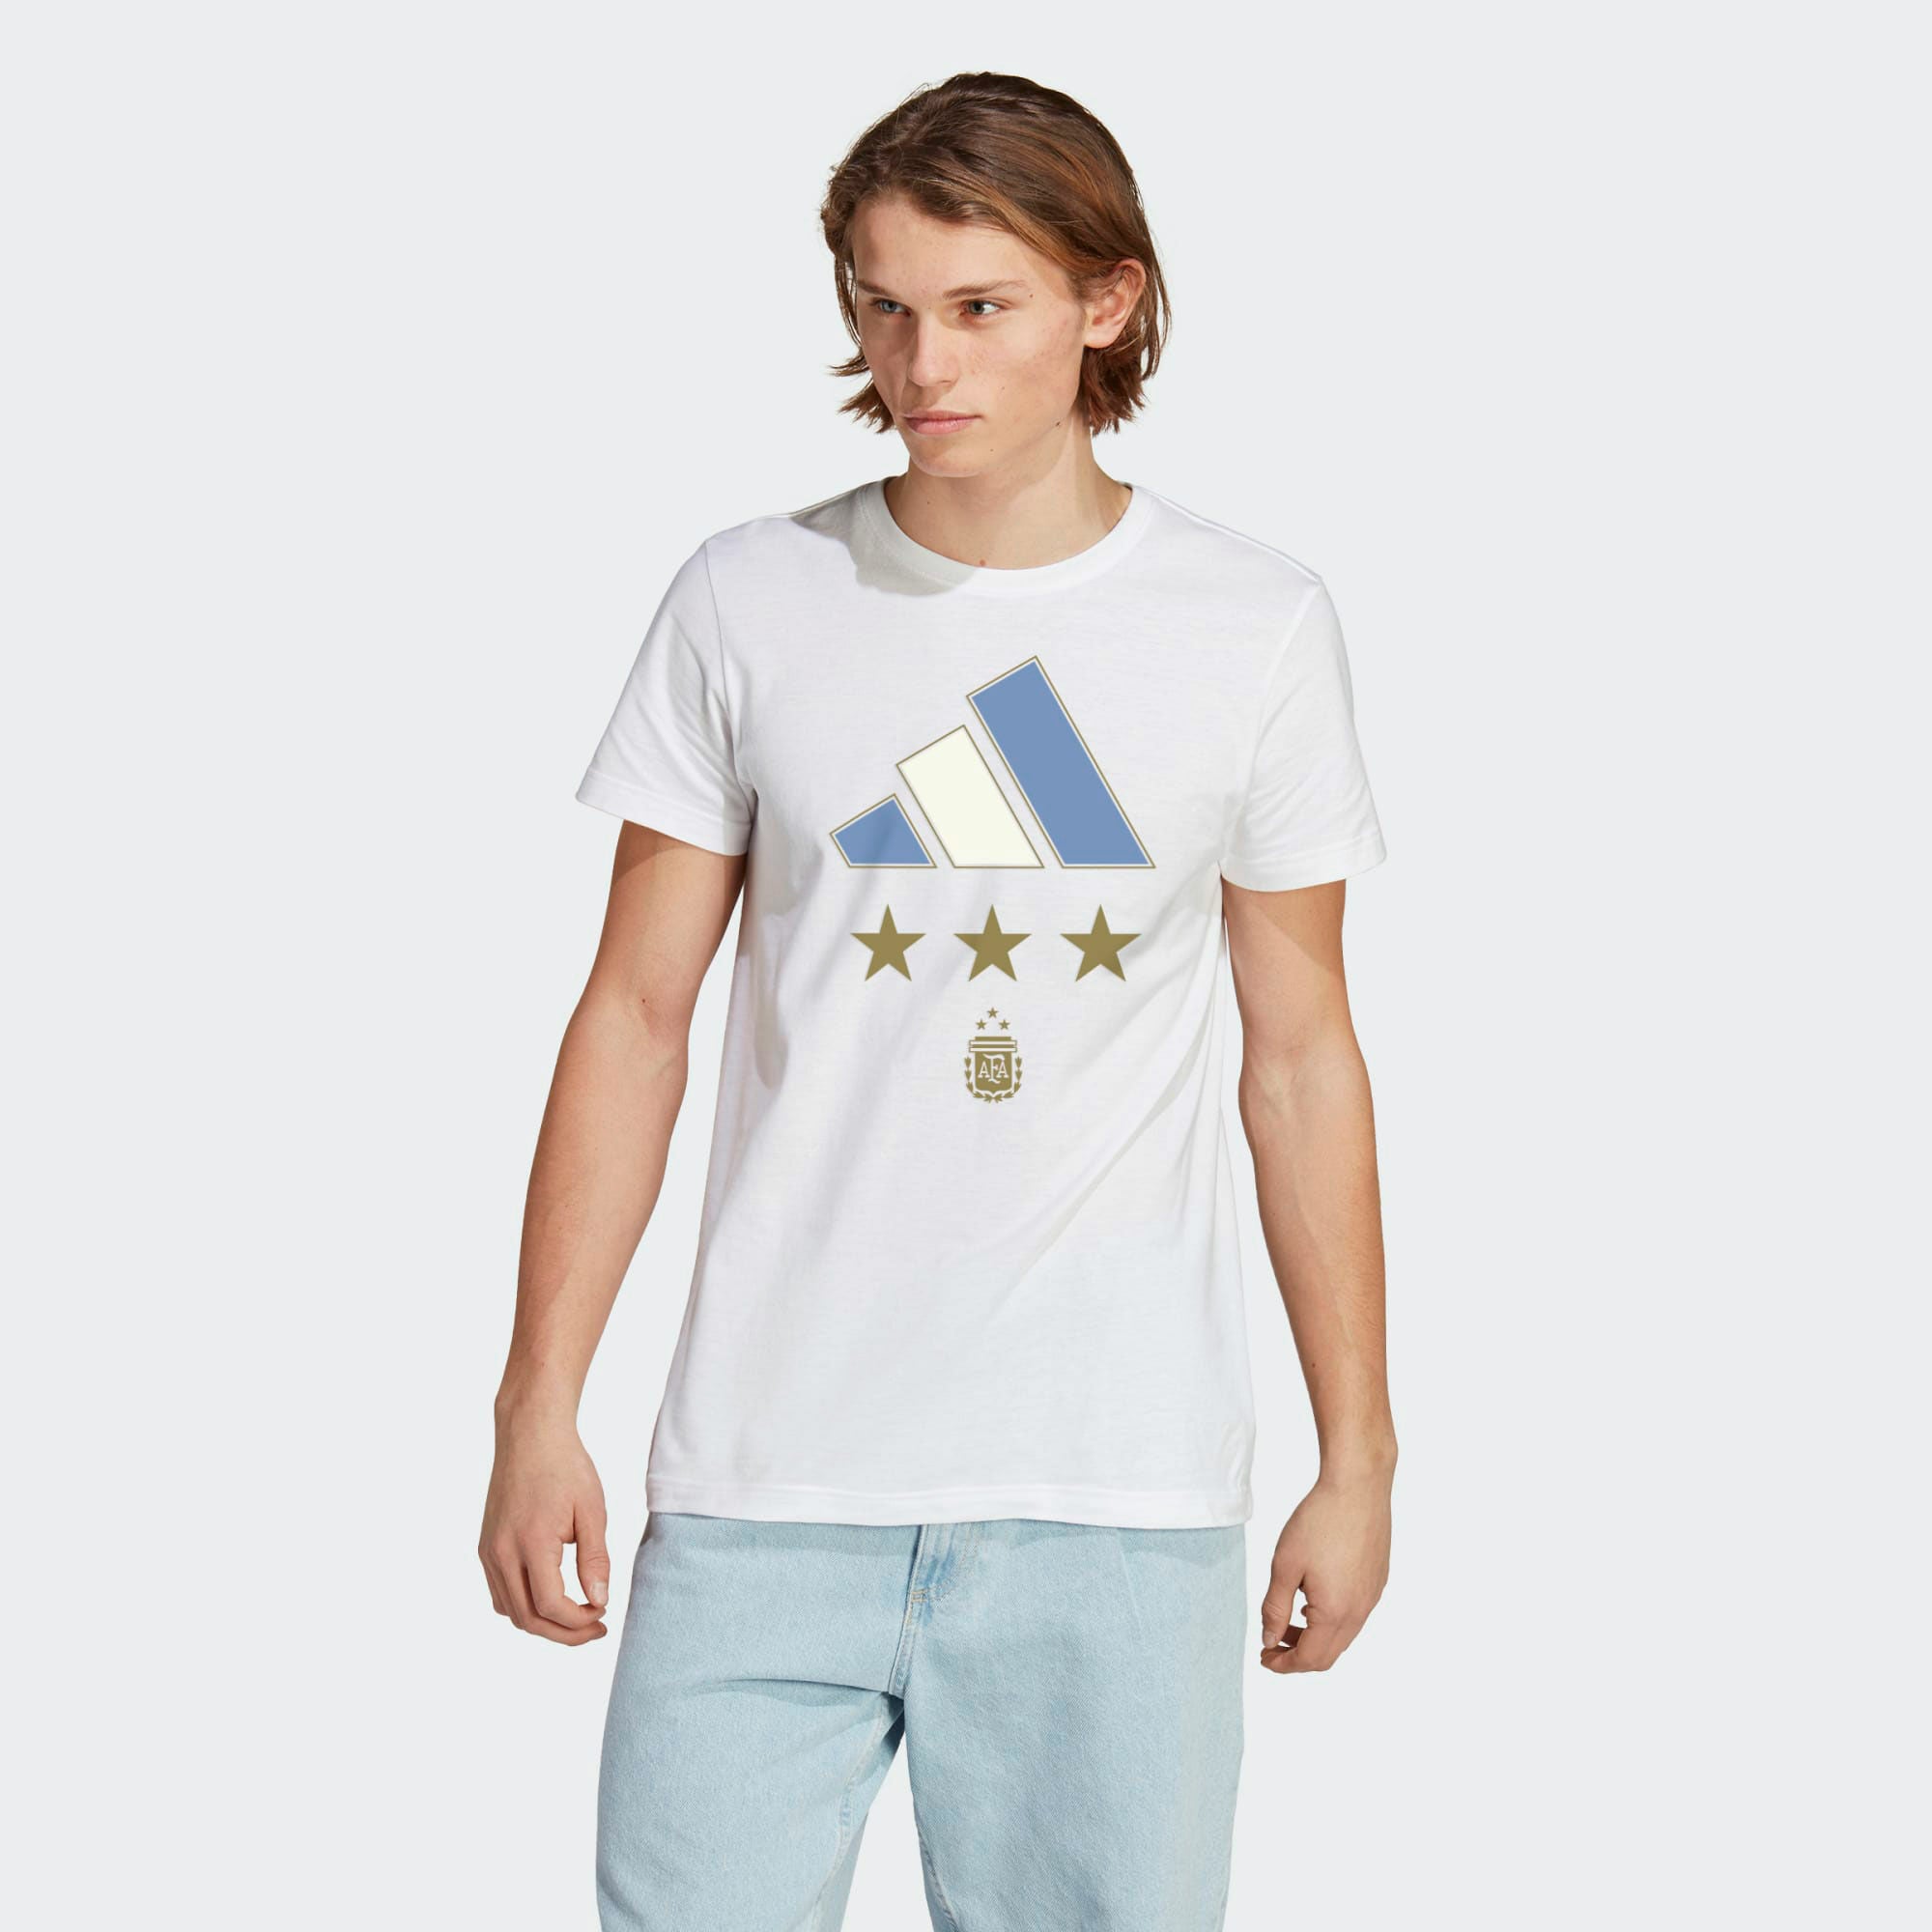 Megafanshop GmbH Adidas World Cup 2022 Argentina Winners T-Shirt XL